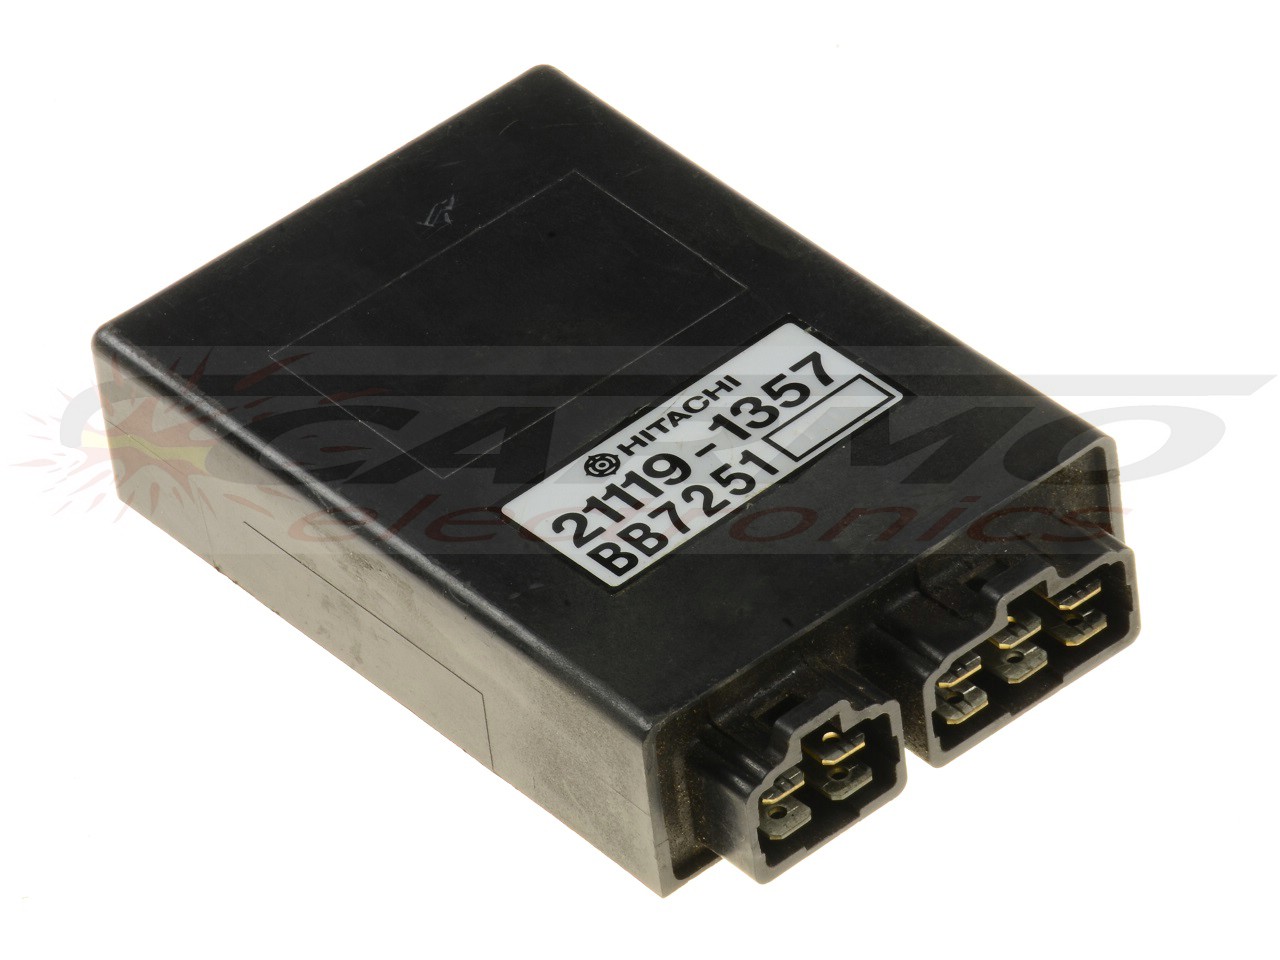 GT750 CDI TCI ECU controller (21119-1357)